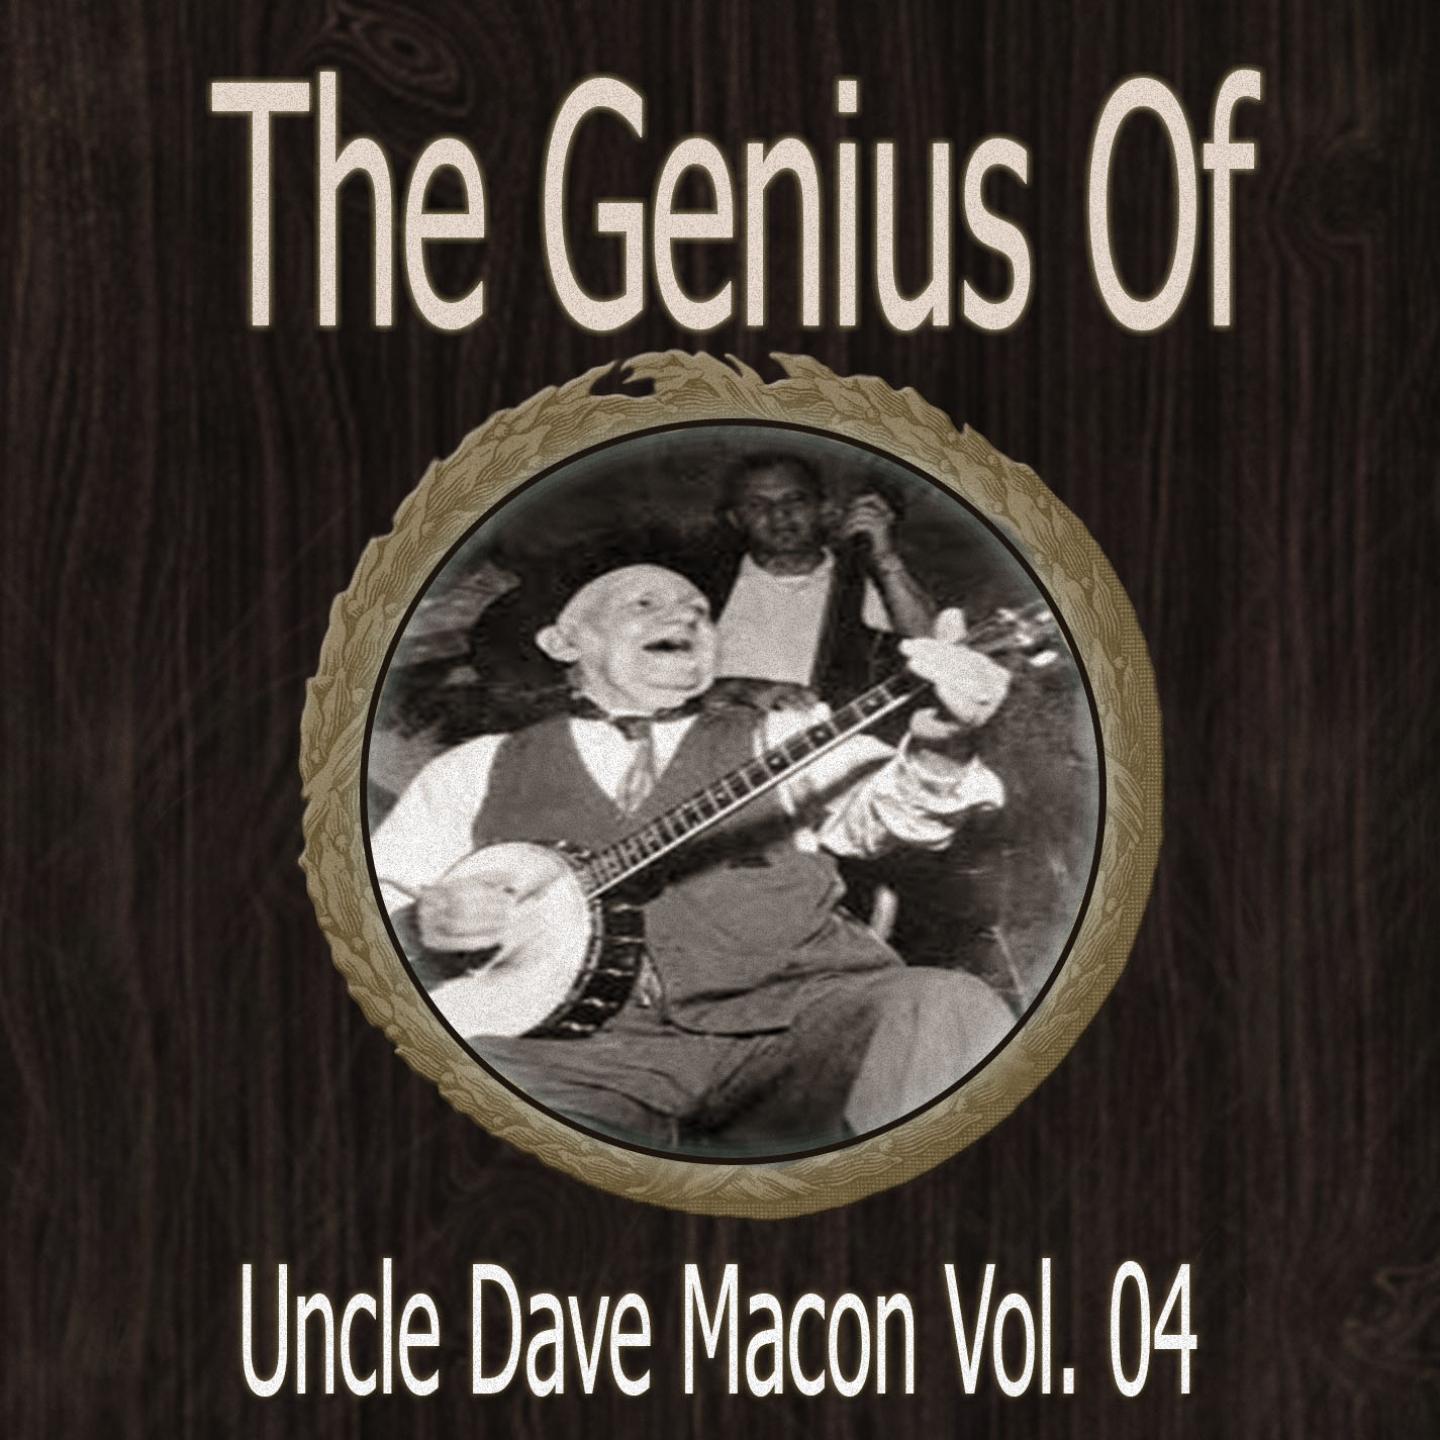 The Genius of Uncle Dave Macon Vol 04